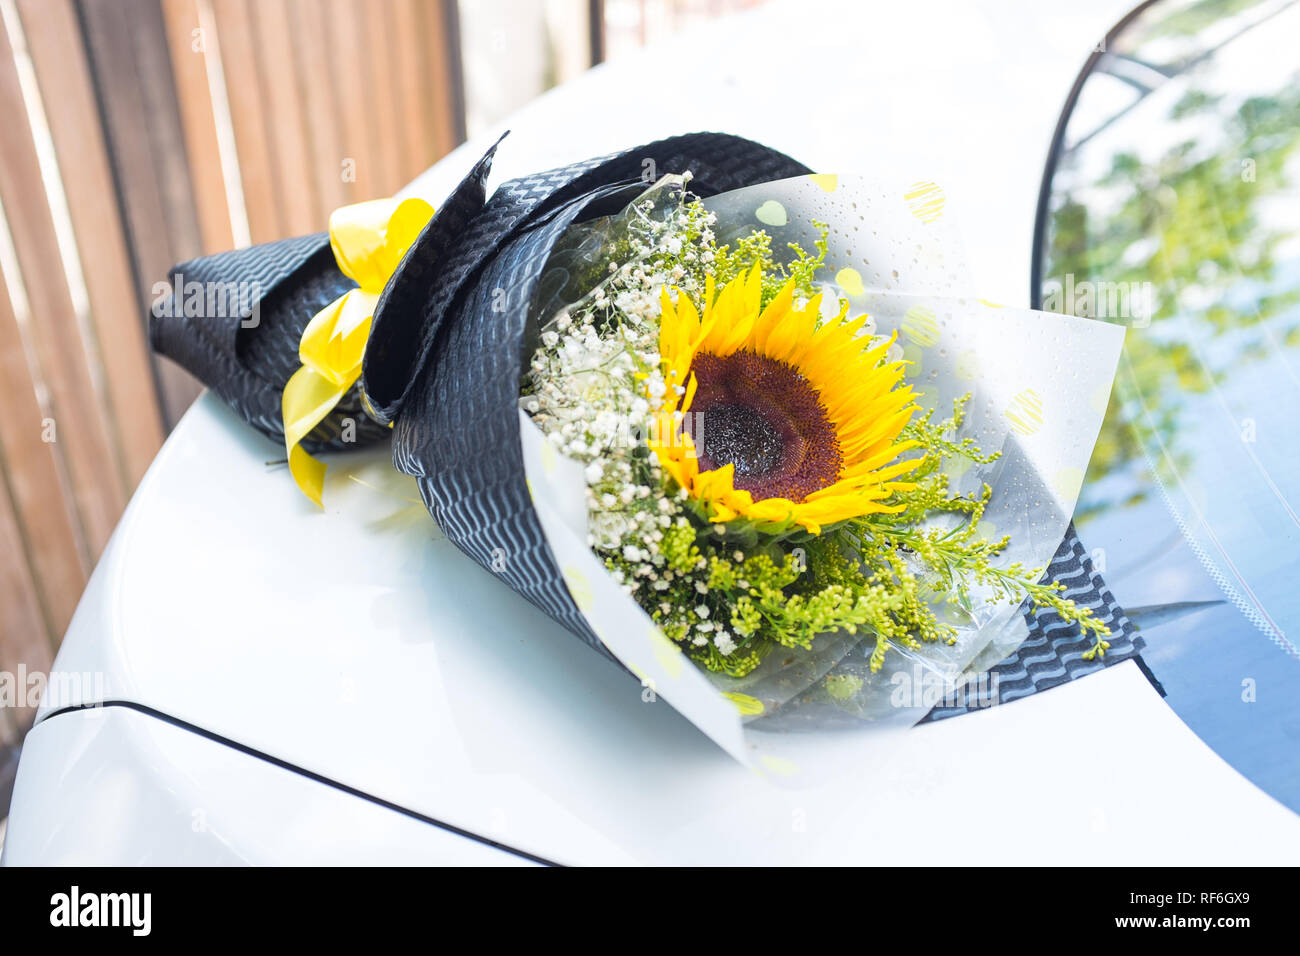 Ein Blumenstrauß aus Sonnenblumen auf ein weißes Auto Stockfotografie -  Alamy